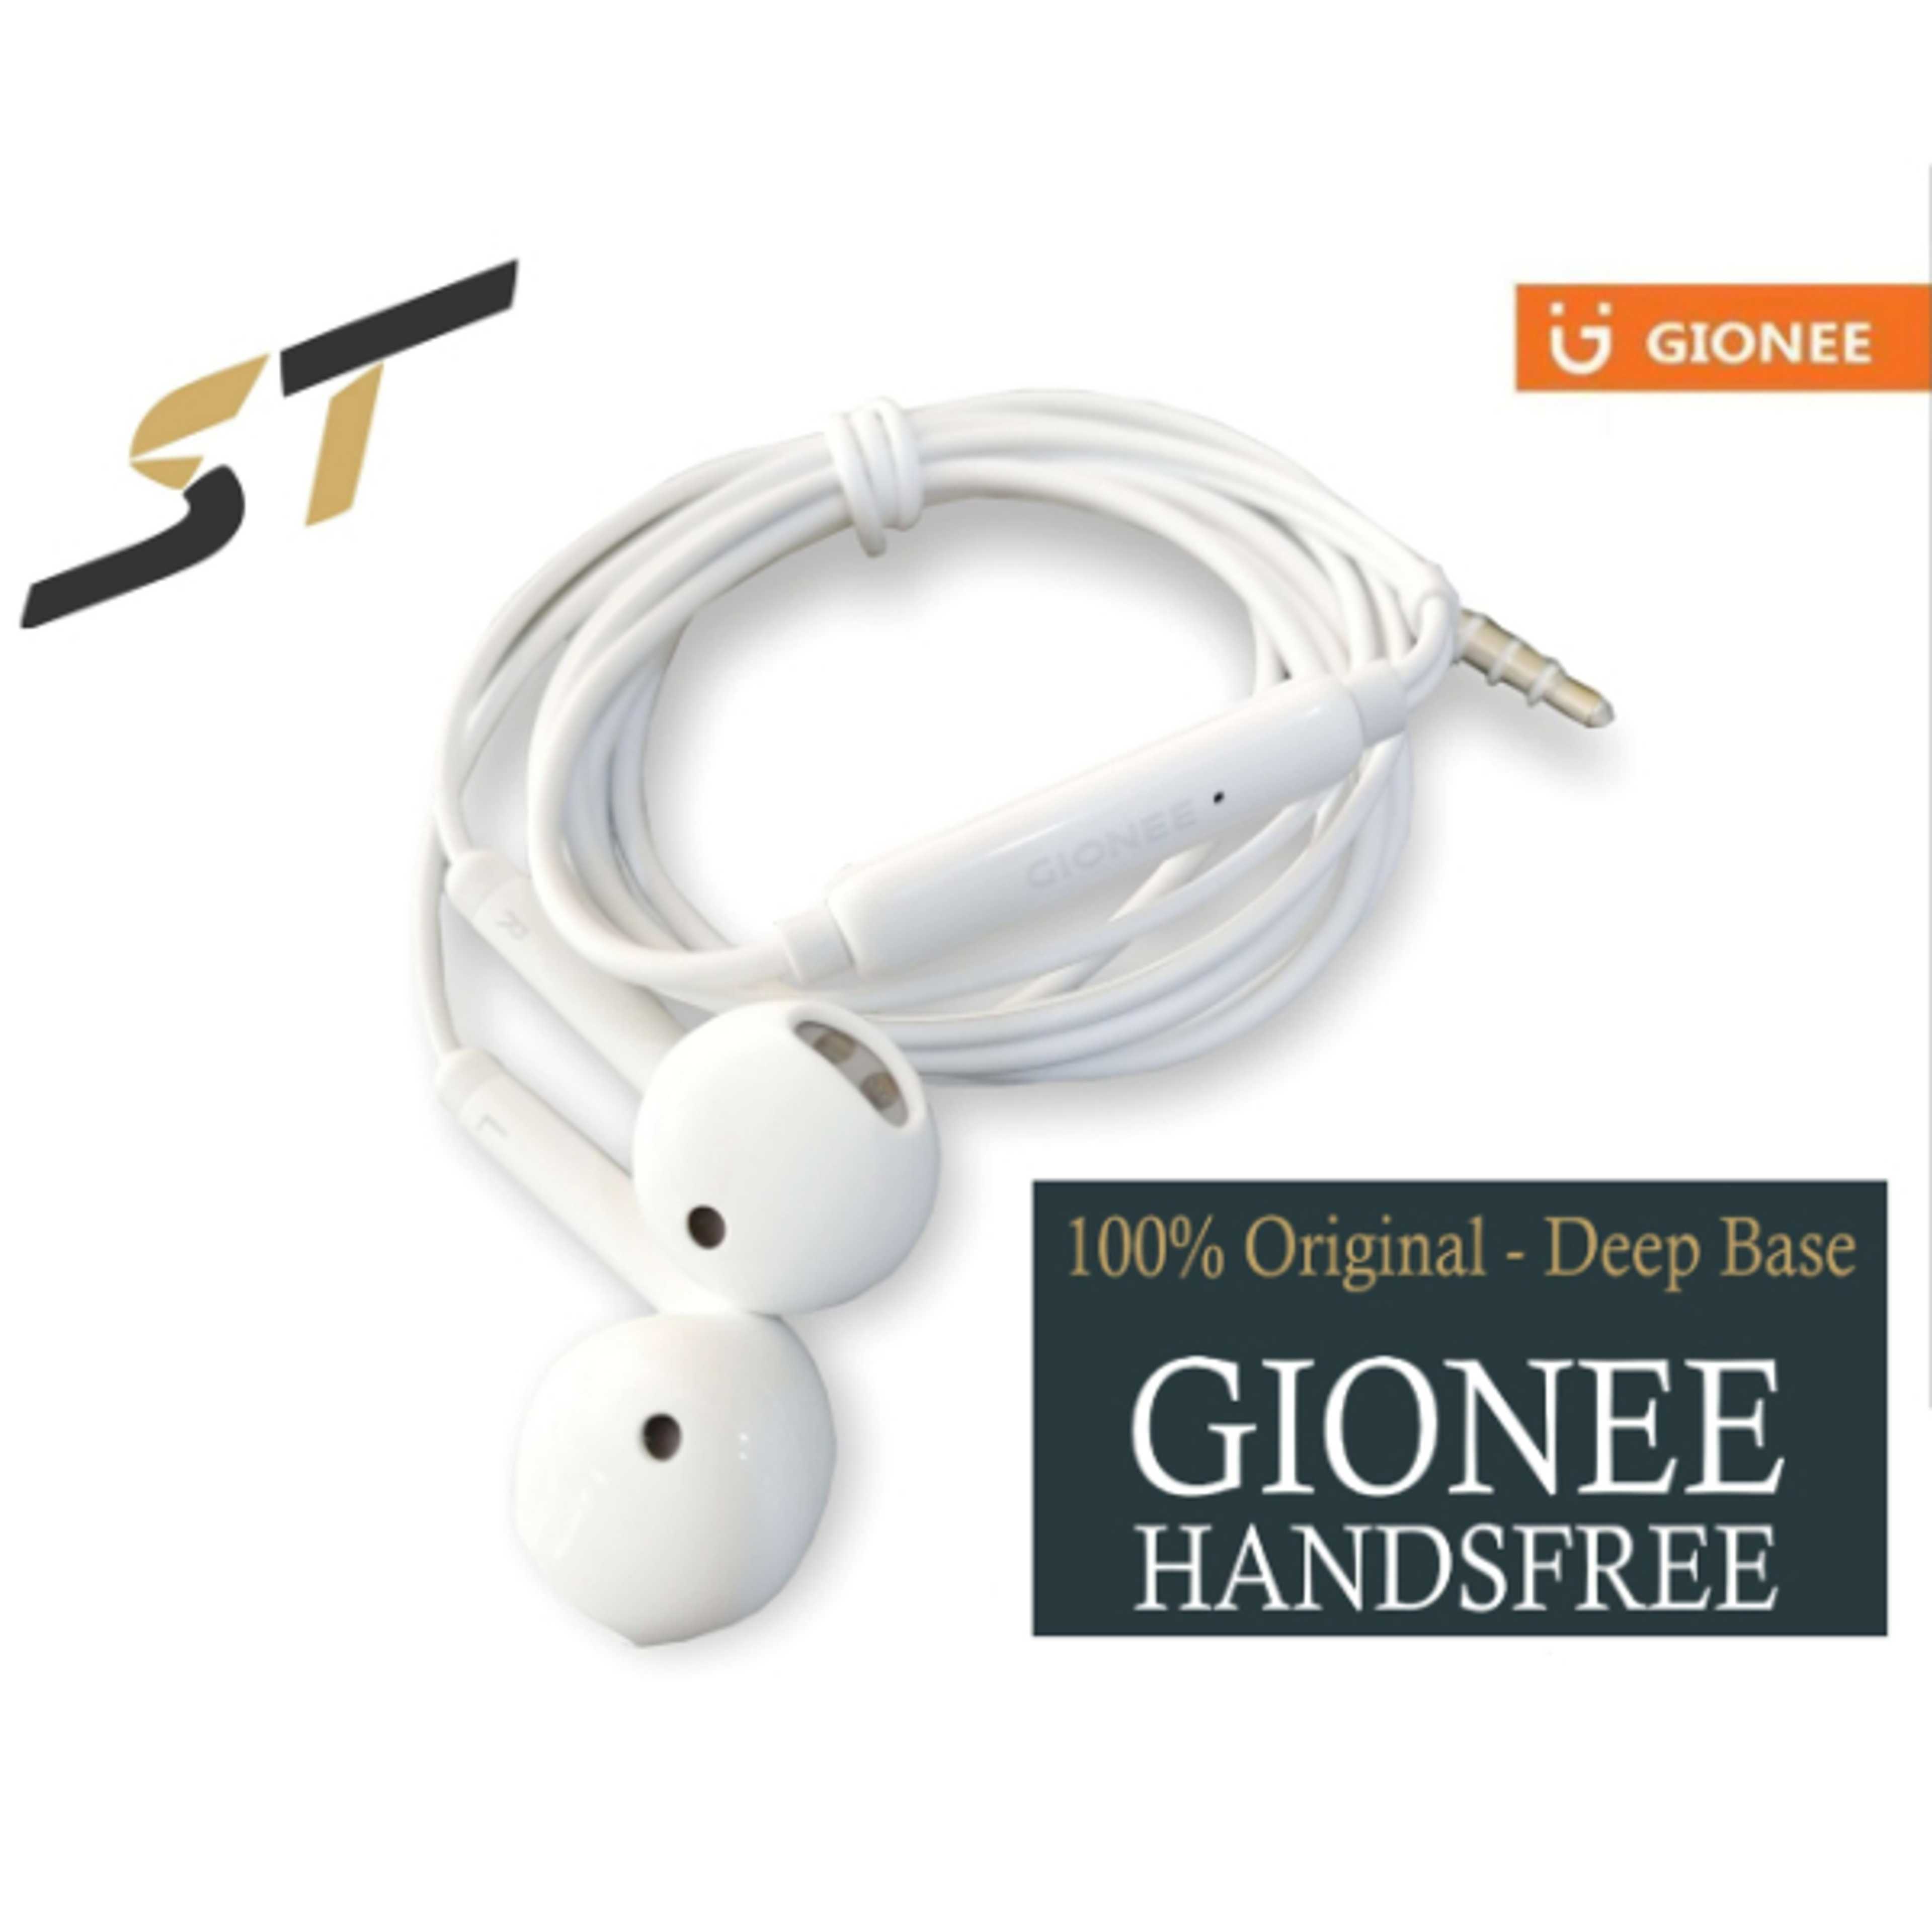 Gionee Handsfree100% OriginalTop Base Quality